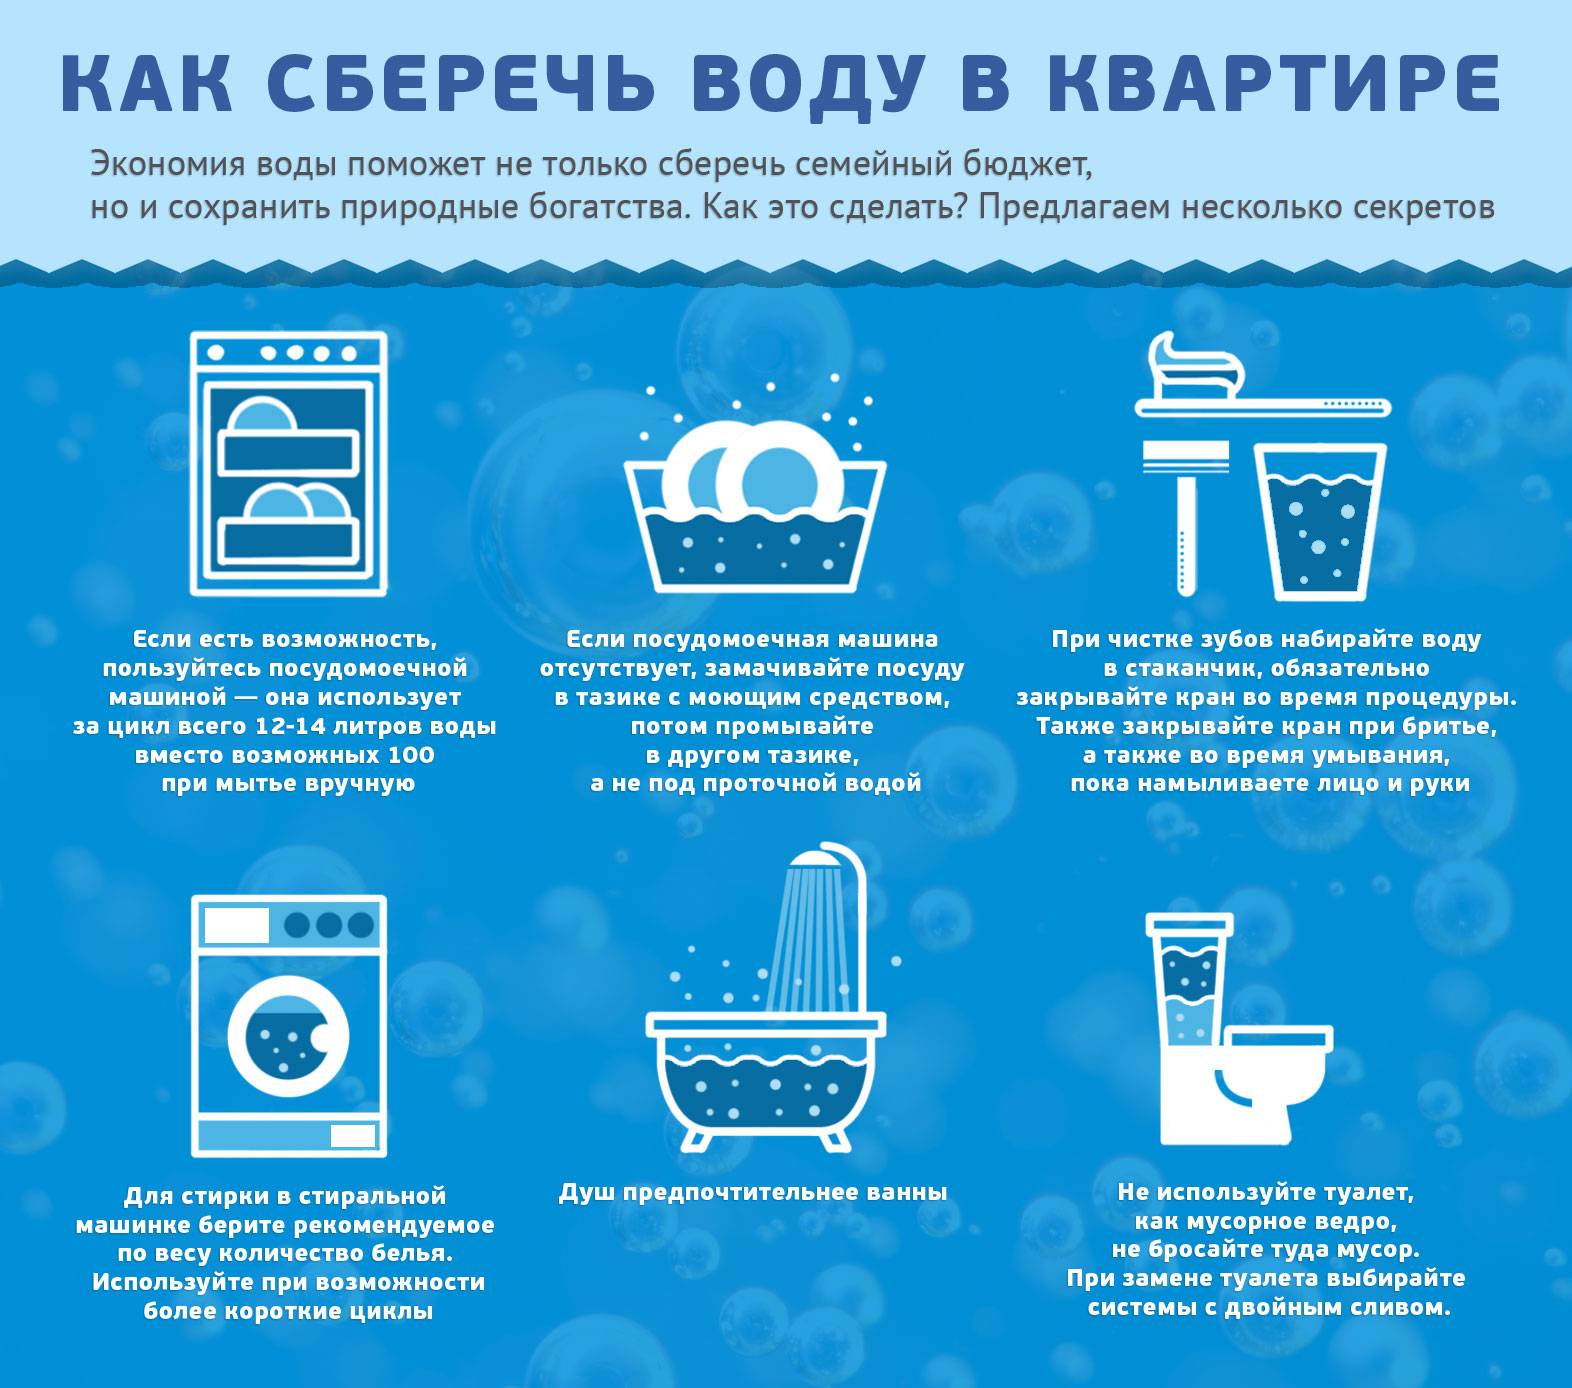 Как экономить воду в квартире со счетчиком: советы